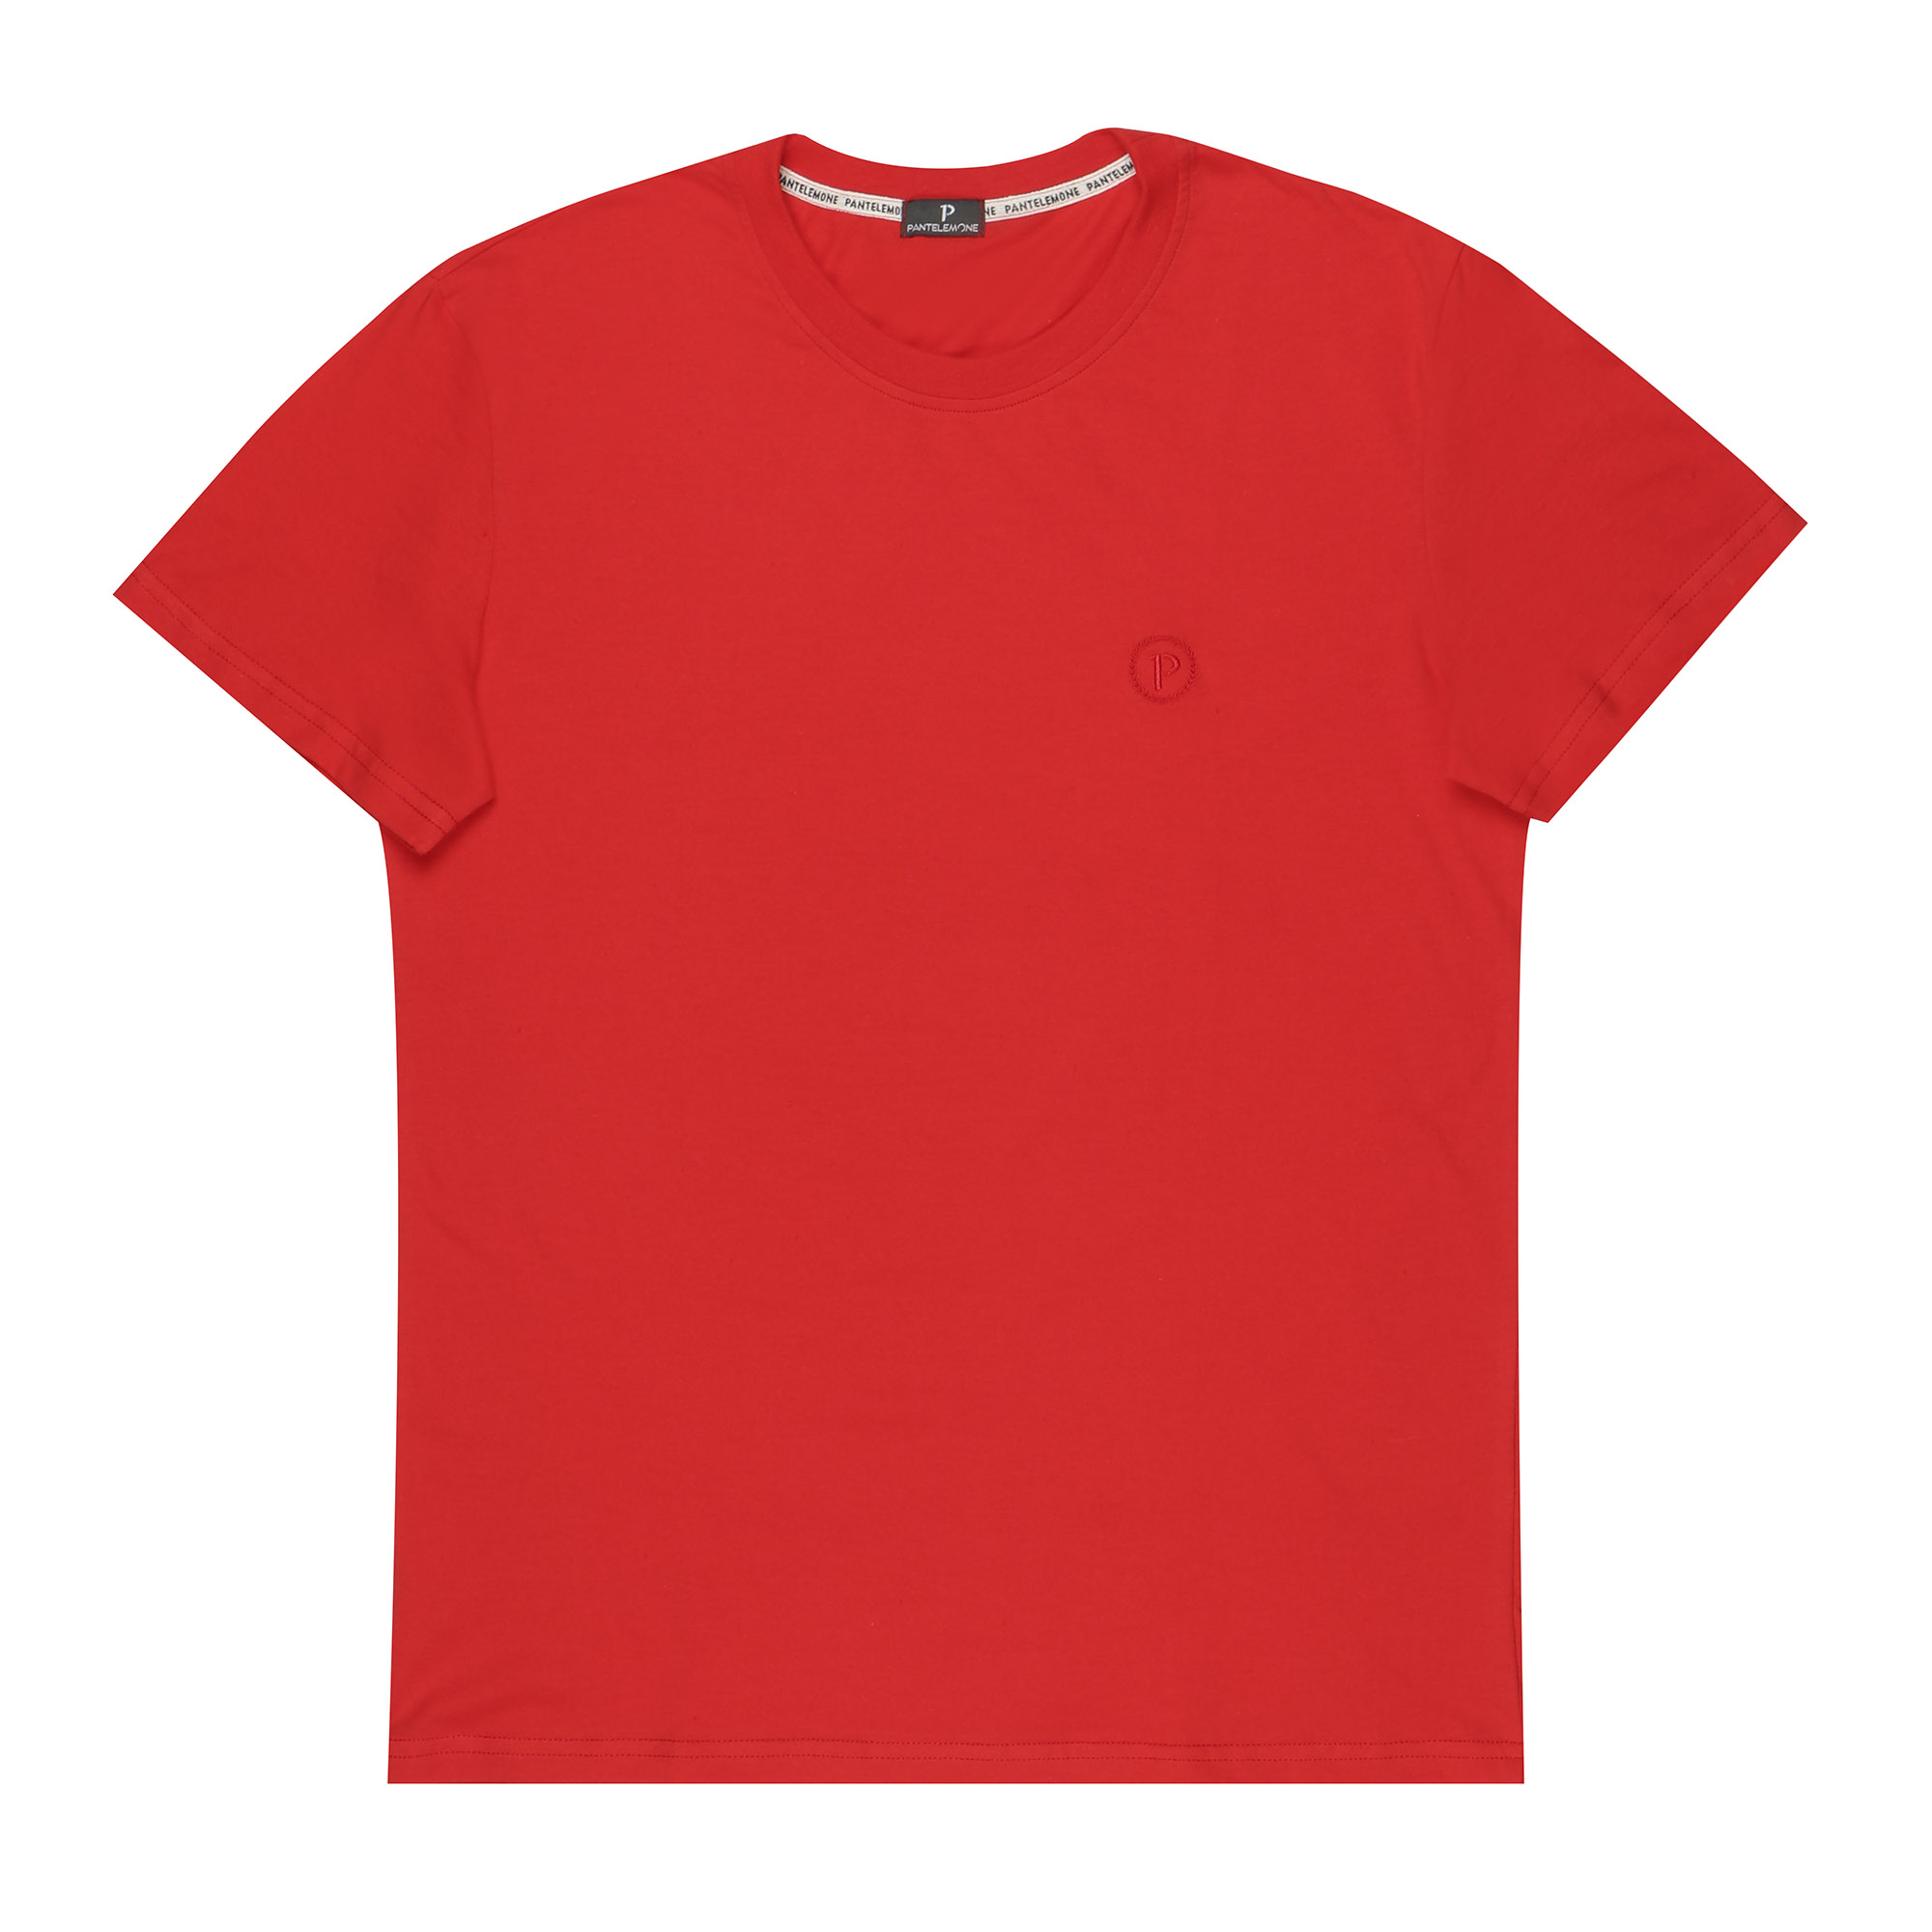 Мужская футболка Pantelemone MF-913 50 красная, цвет красный, размер 50 - фото 1